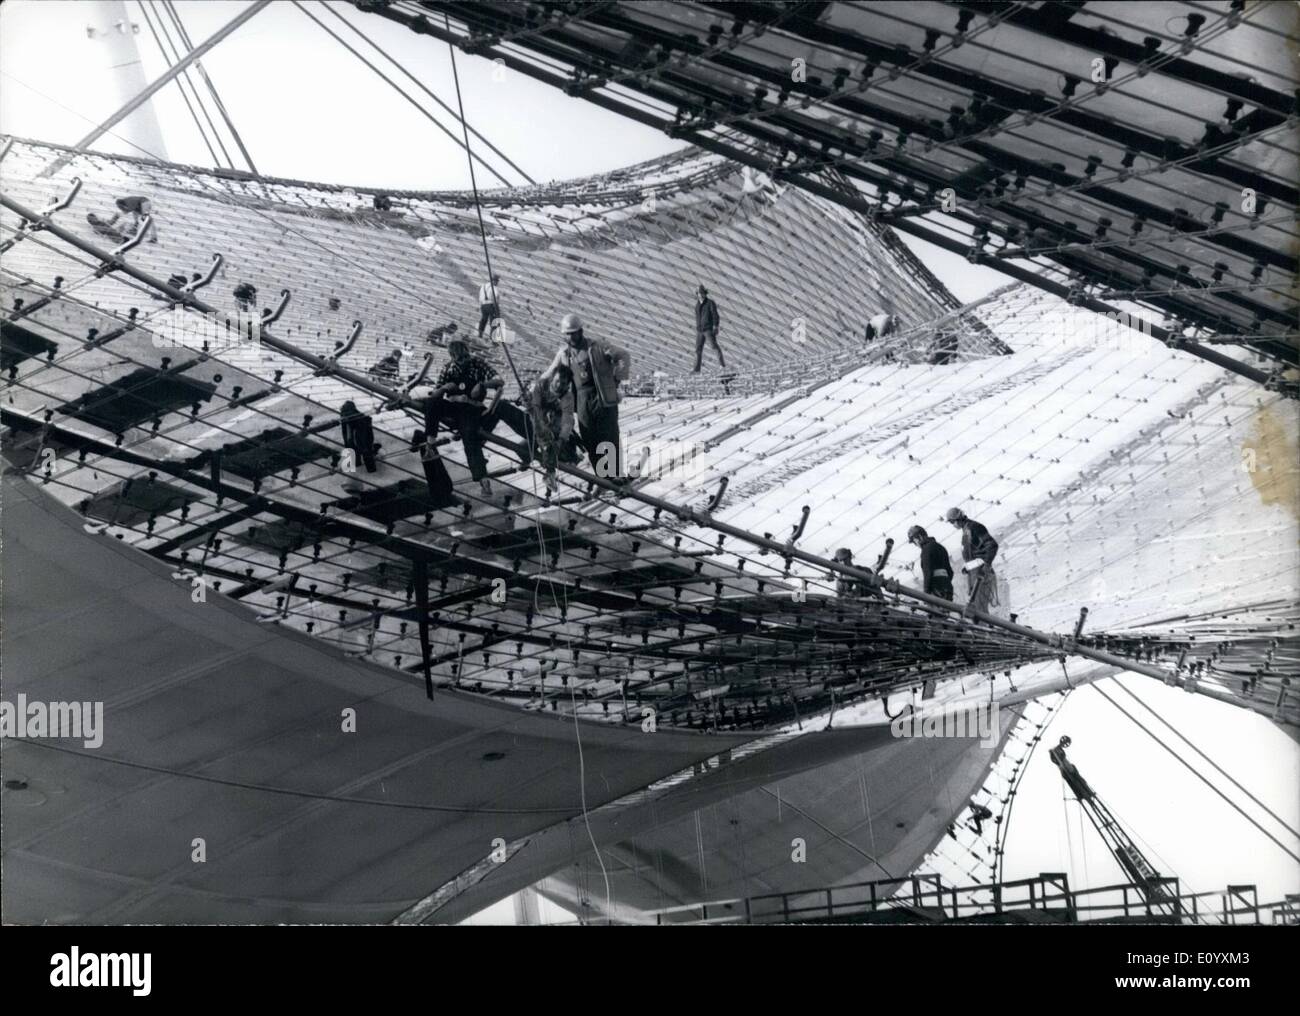 10 octobre 1971 - Les travaux sur le plus grand toit du monde.. : sont toujours en cours. Les travailleurs ont à donner des spectacles dans l'artistique presque ''net'' des Jeux Olympiques parce que le toit de la mise en panneaux transparents est travail dur et des besoins de compétences. Banque D'Images